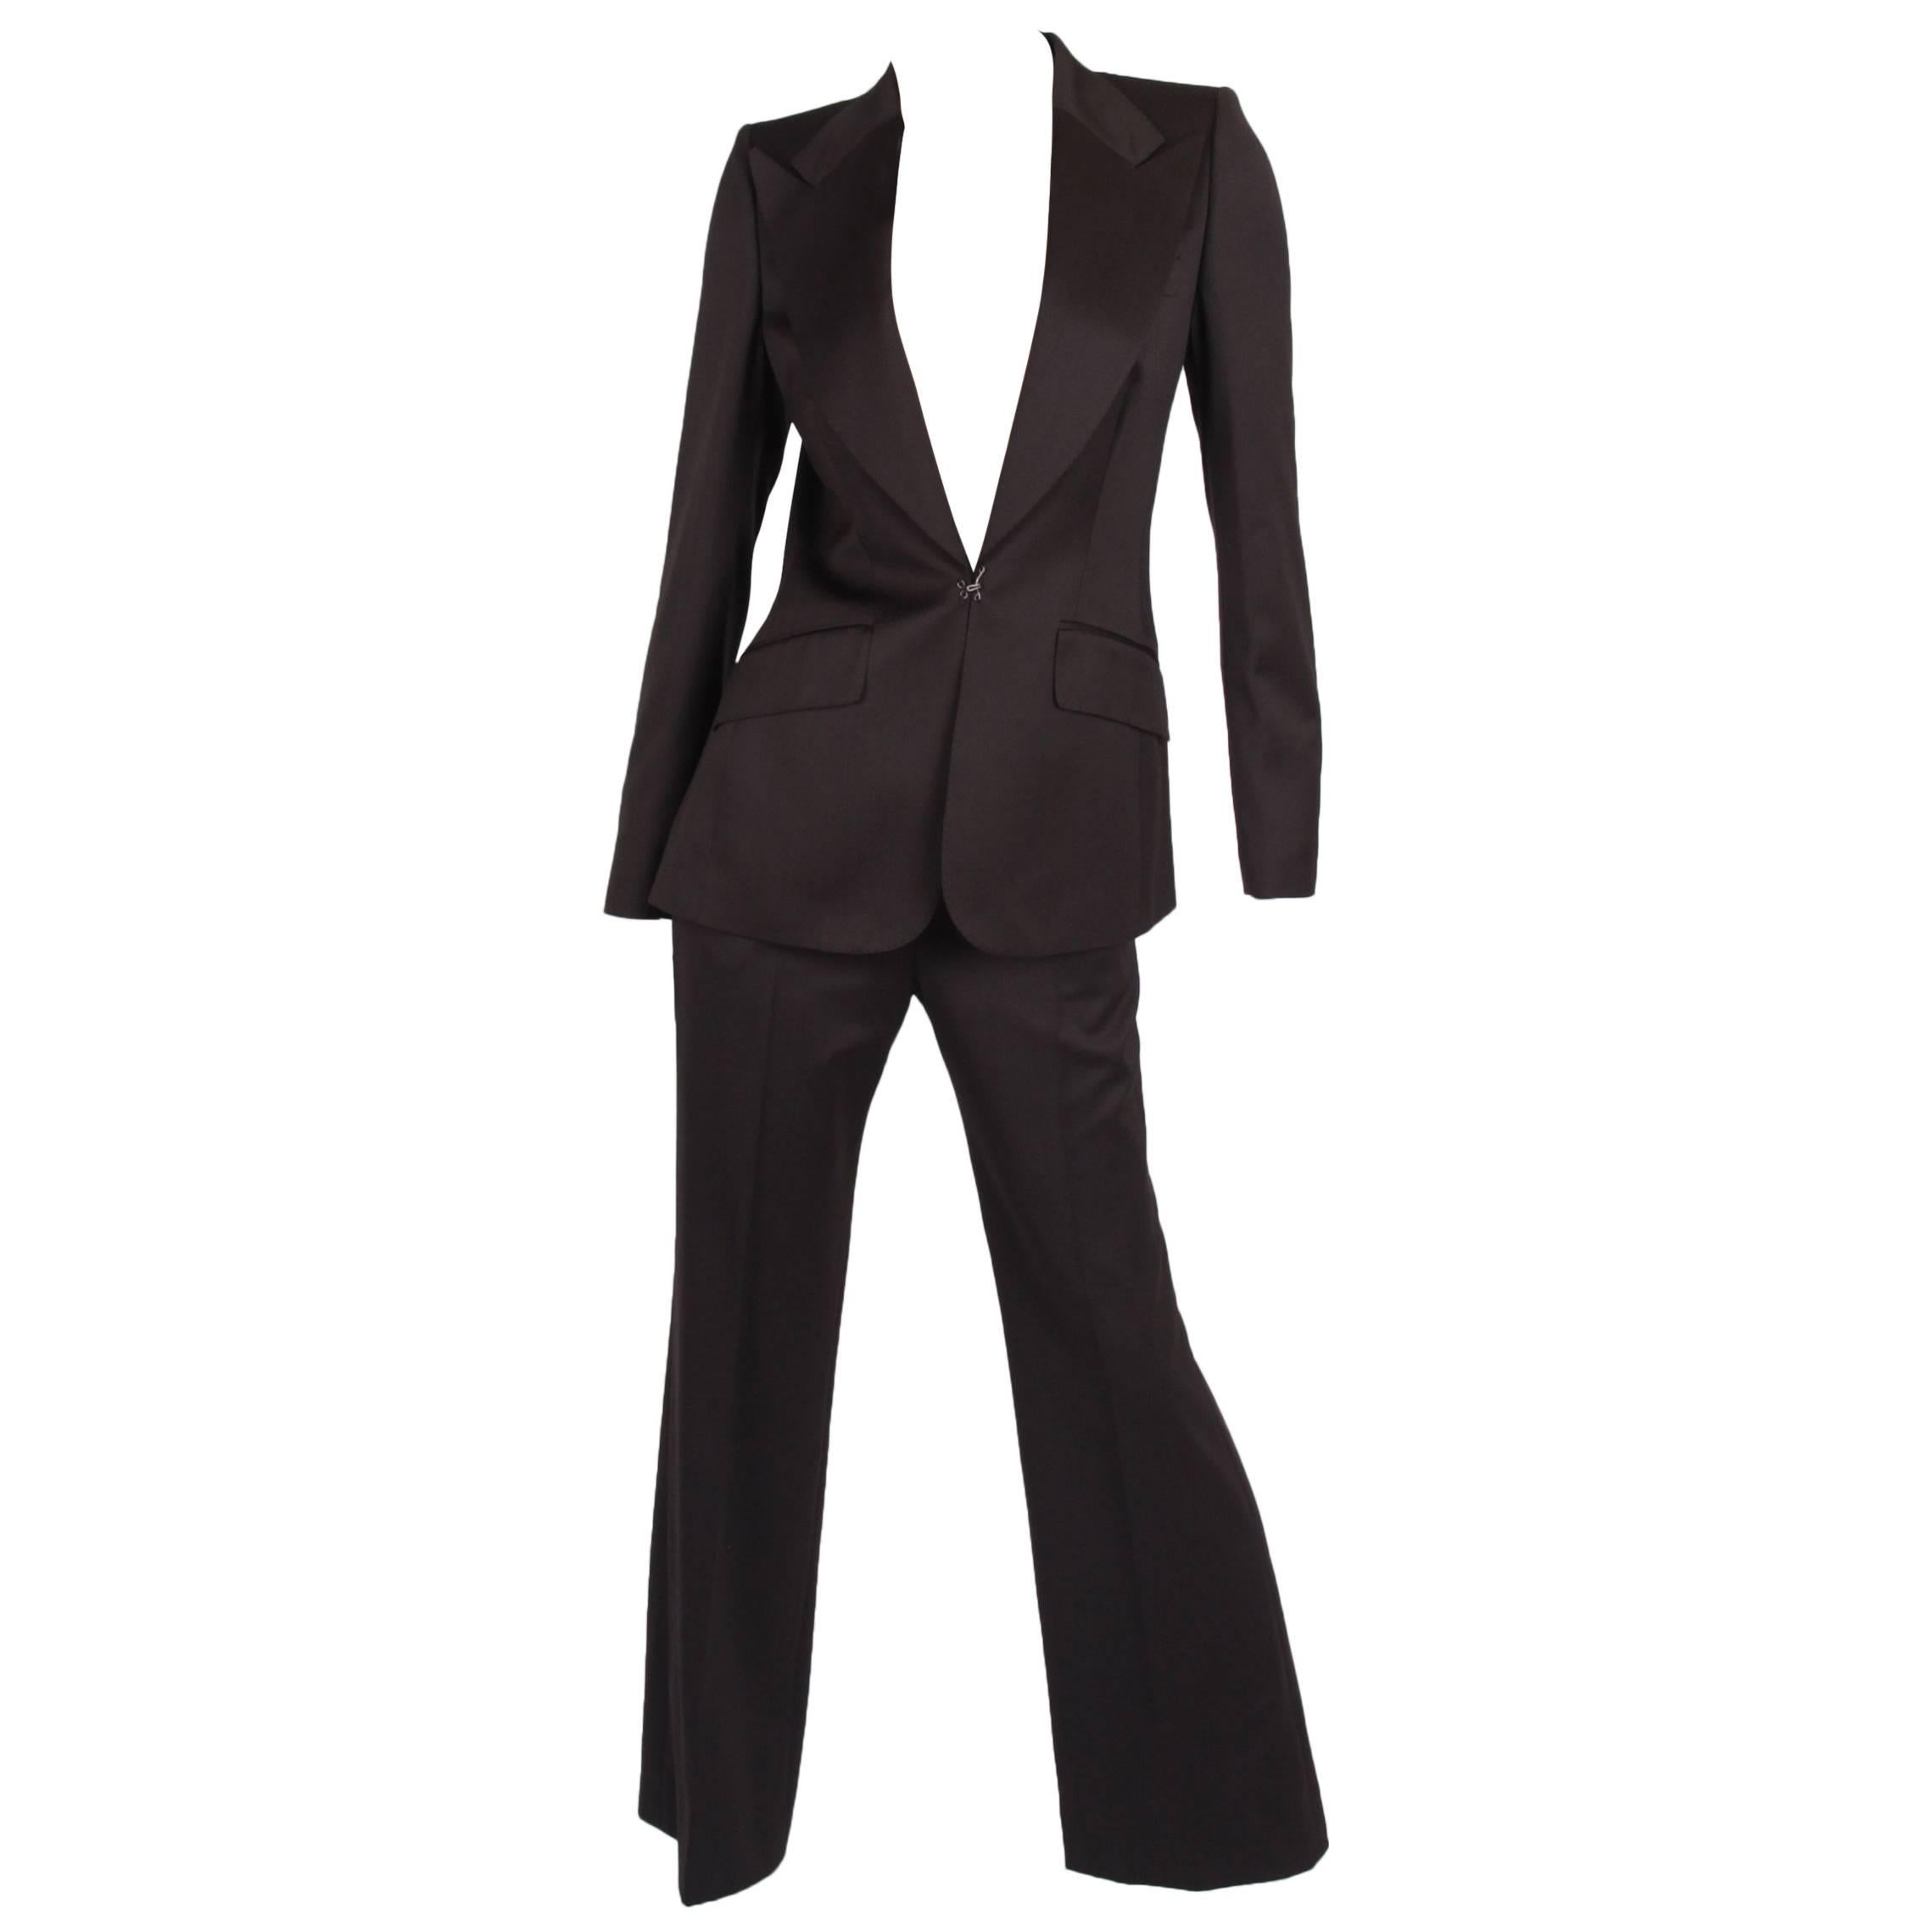 Chloe 2-pcs Suit Jacket & Trousers - brown For Sale